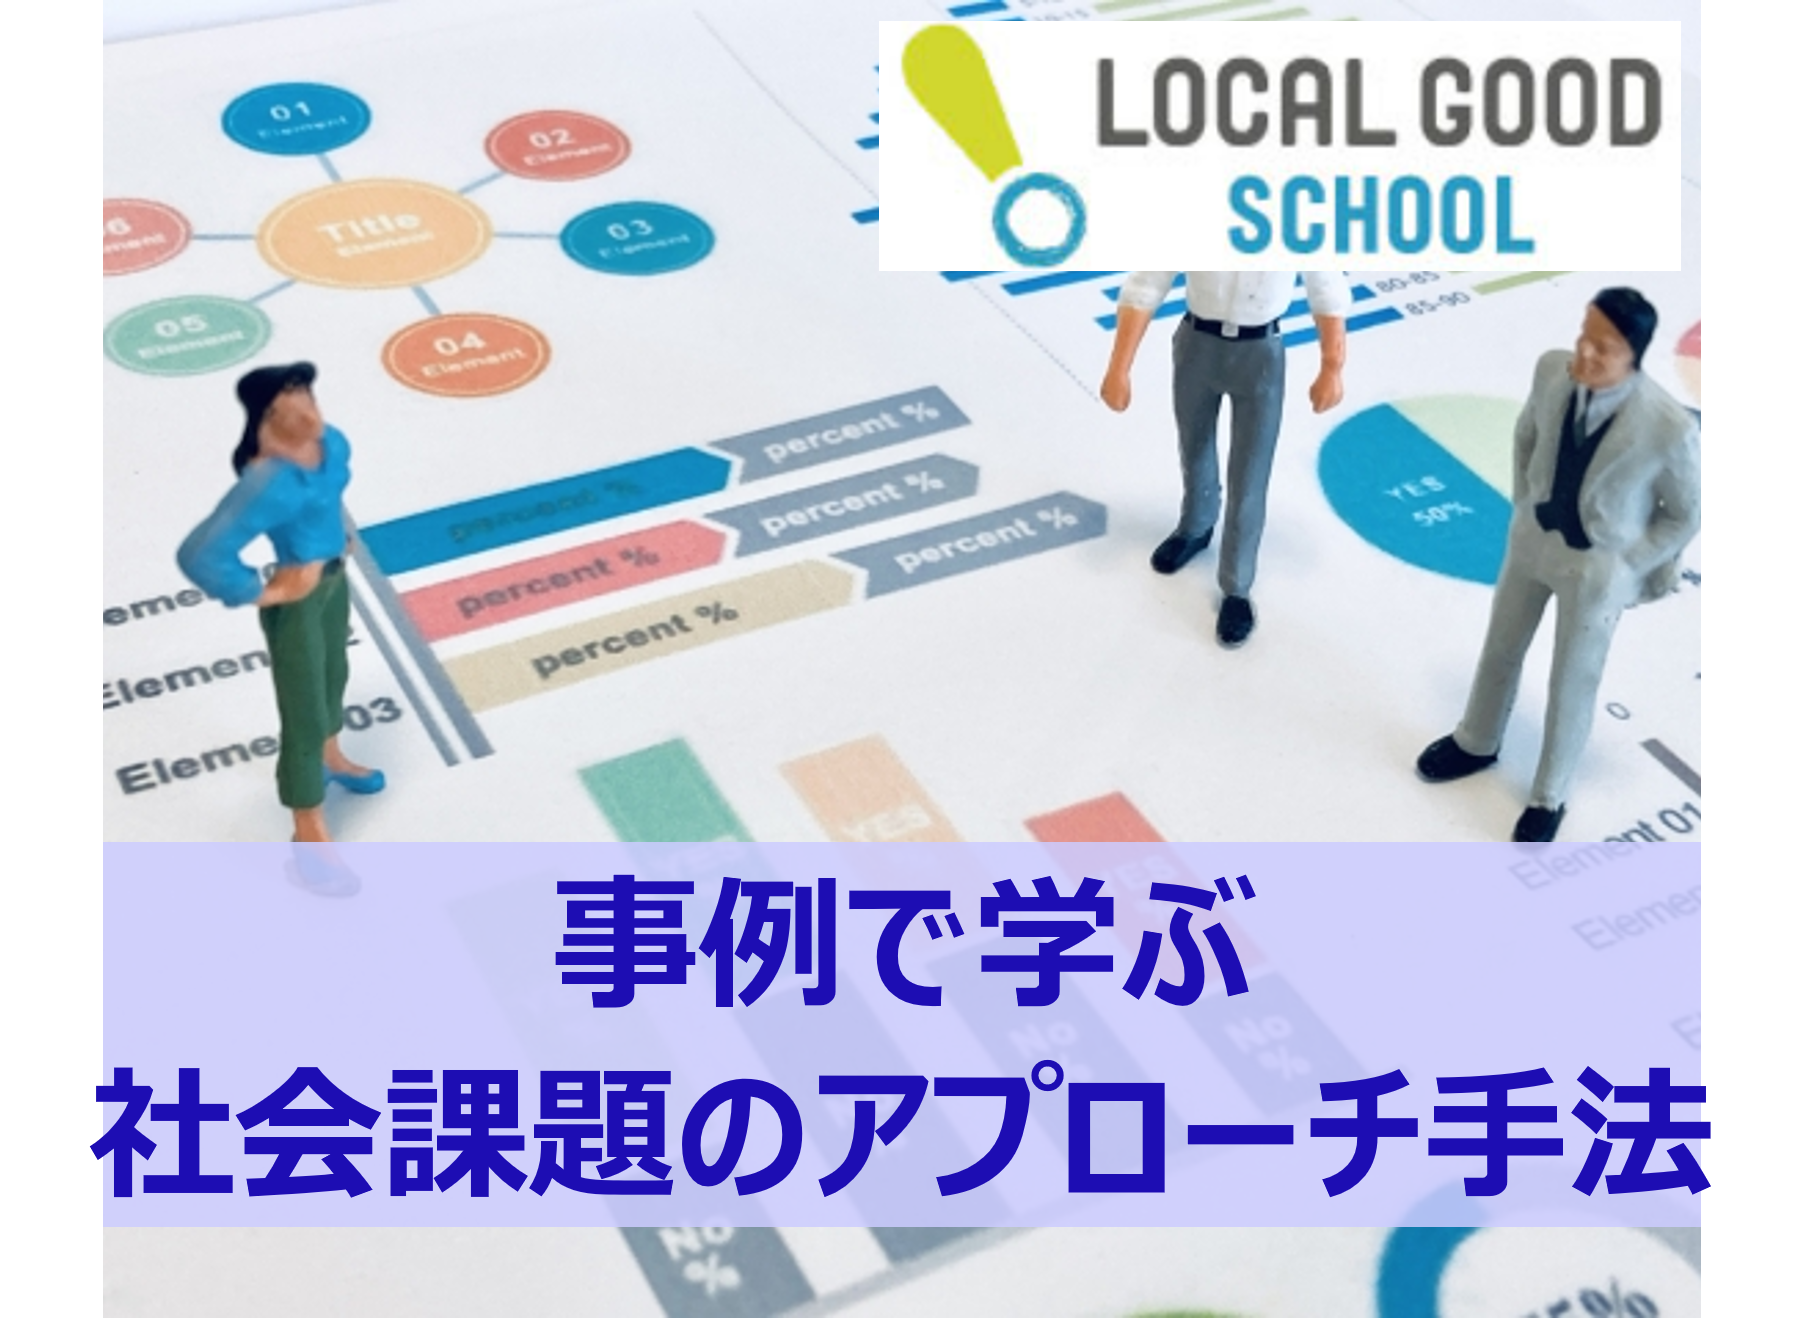 横浜における社会課題解決に向けた取り組みについて - LOCAL GOOD